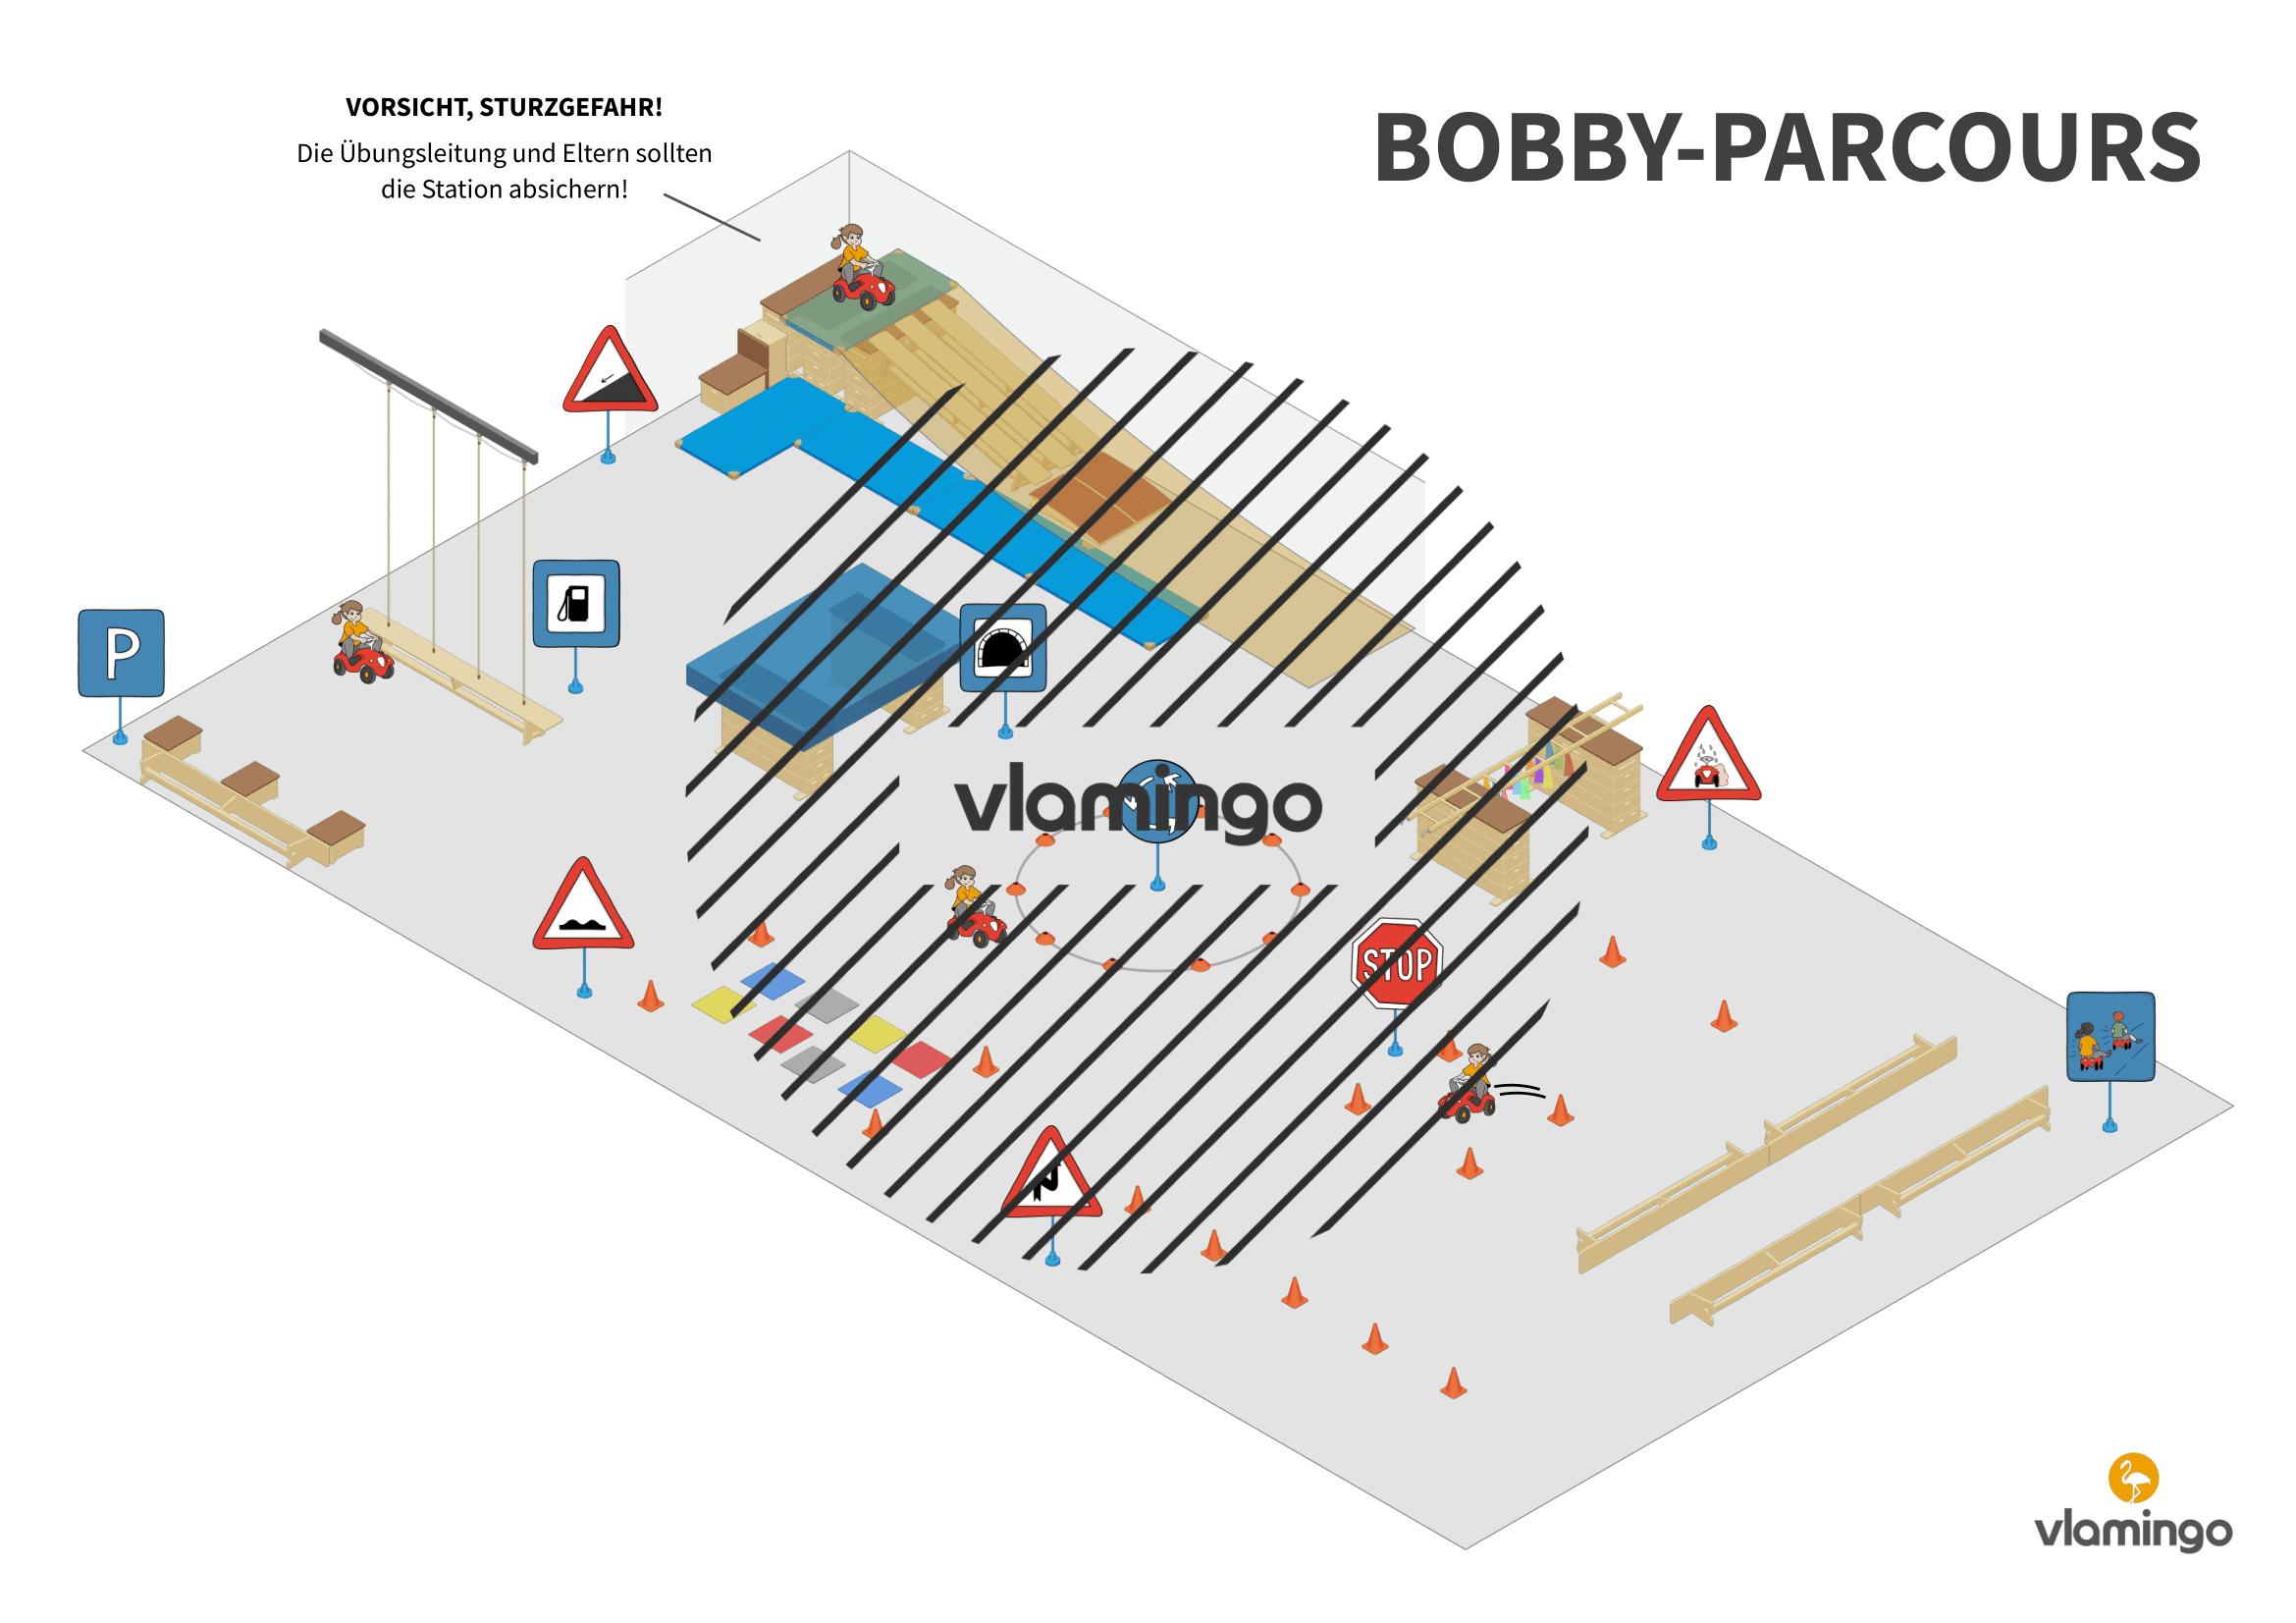 Bobby-Führerschein - Parcours 1